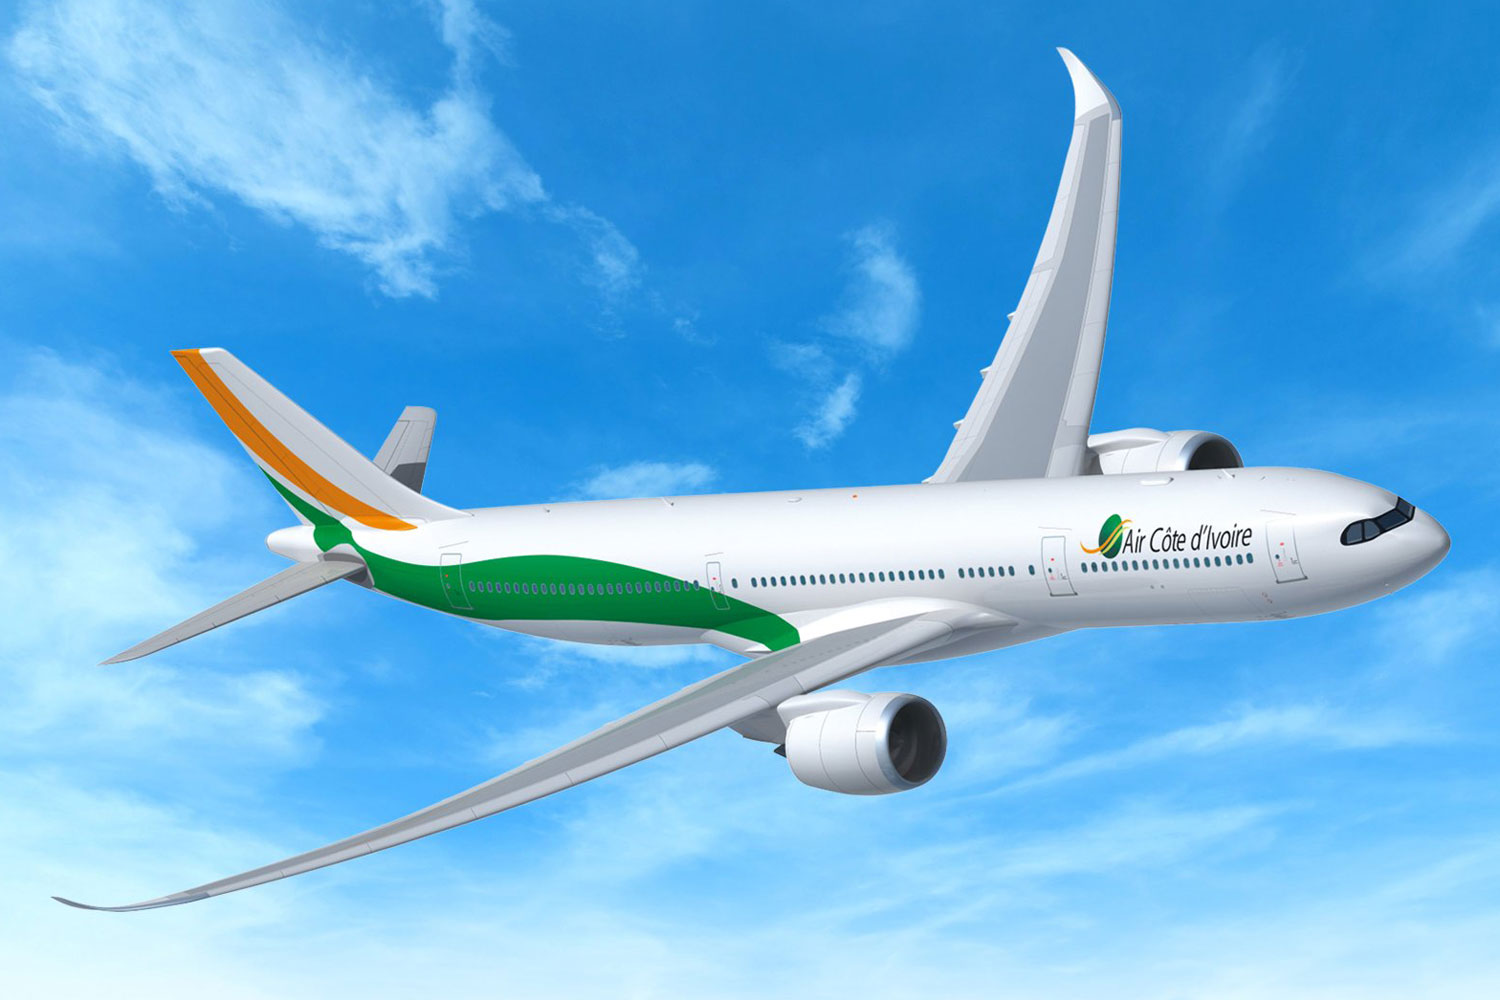 Expansão: Air Cote d'Ivoire planeja voos de longa distância